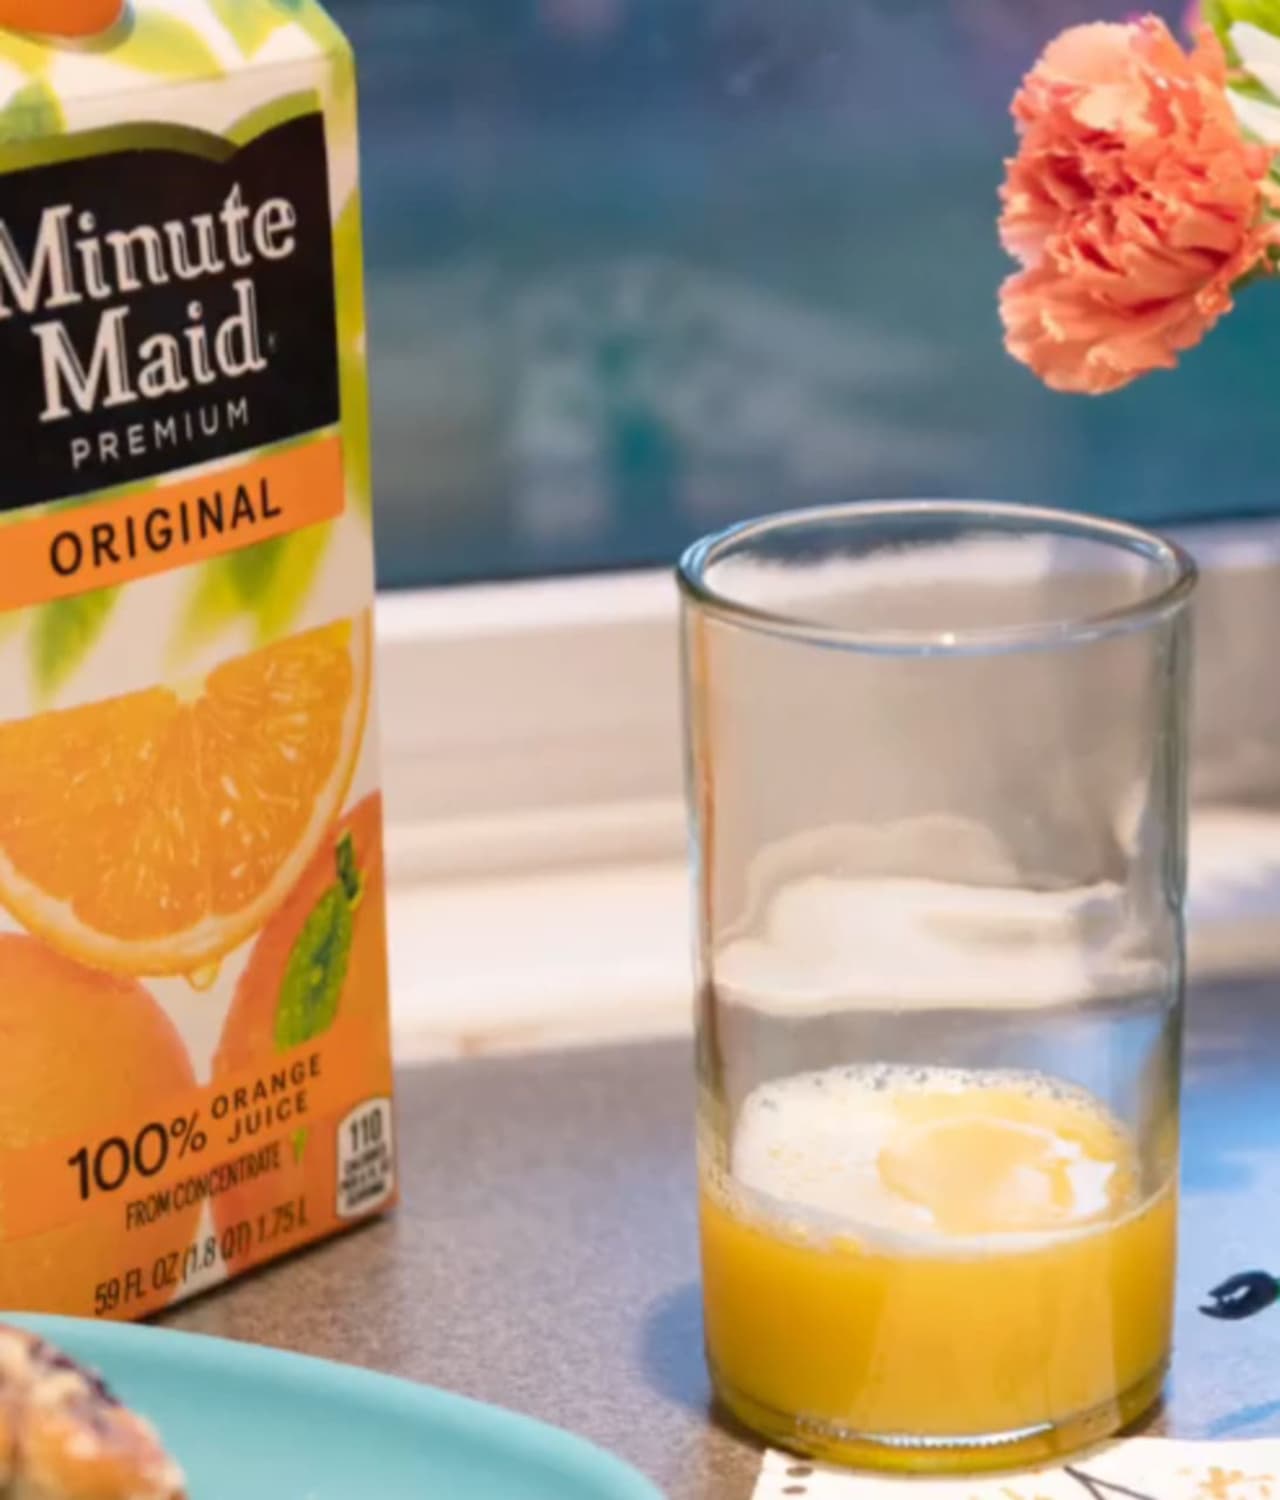 Minute maid orange juice